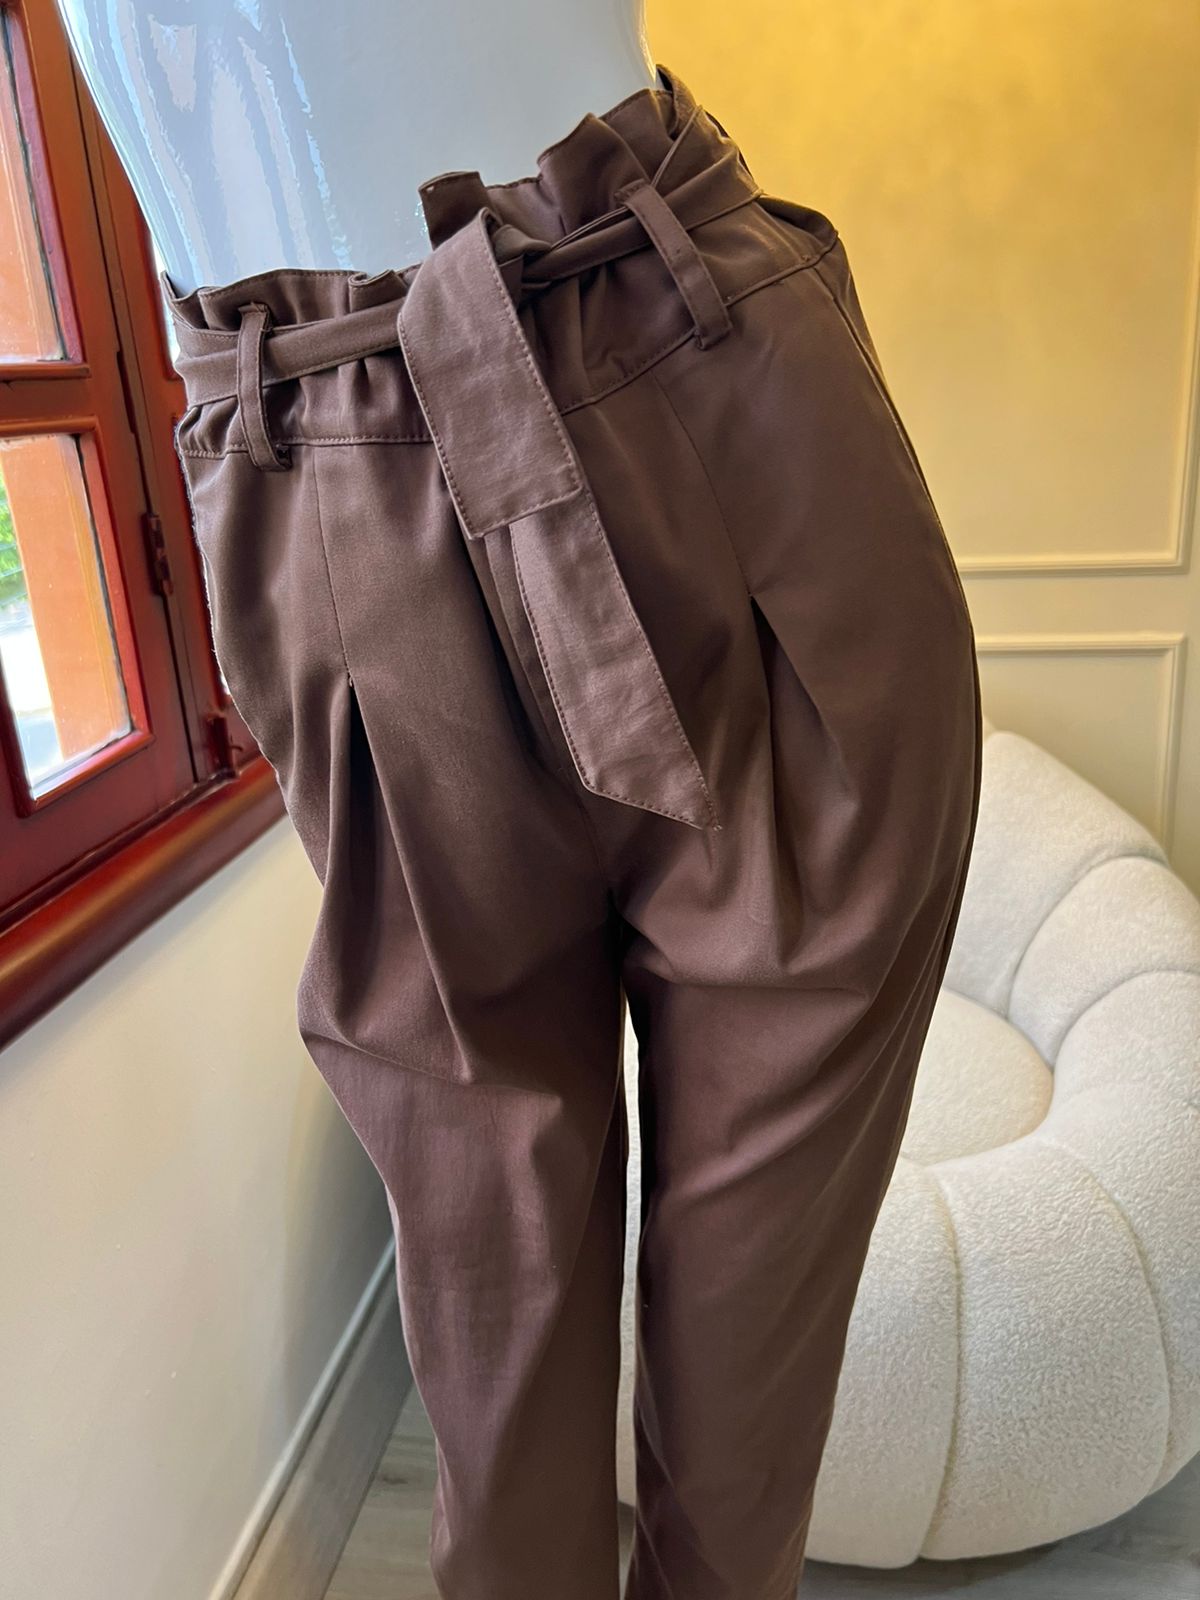 Pantalones Paper Bag color marrón para mujer, diseño moderno y cómodo, ideales para cualquier ocasión, de KIKE RODRIGUEZ.